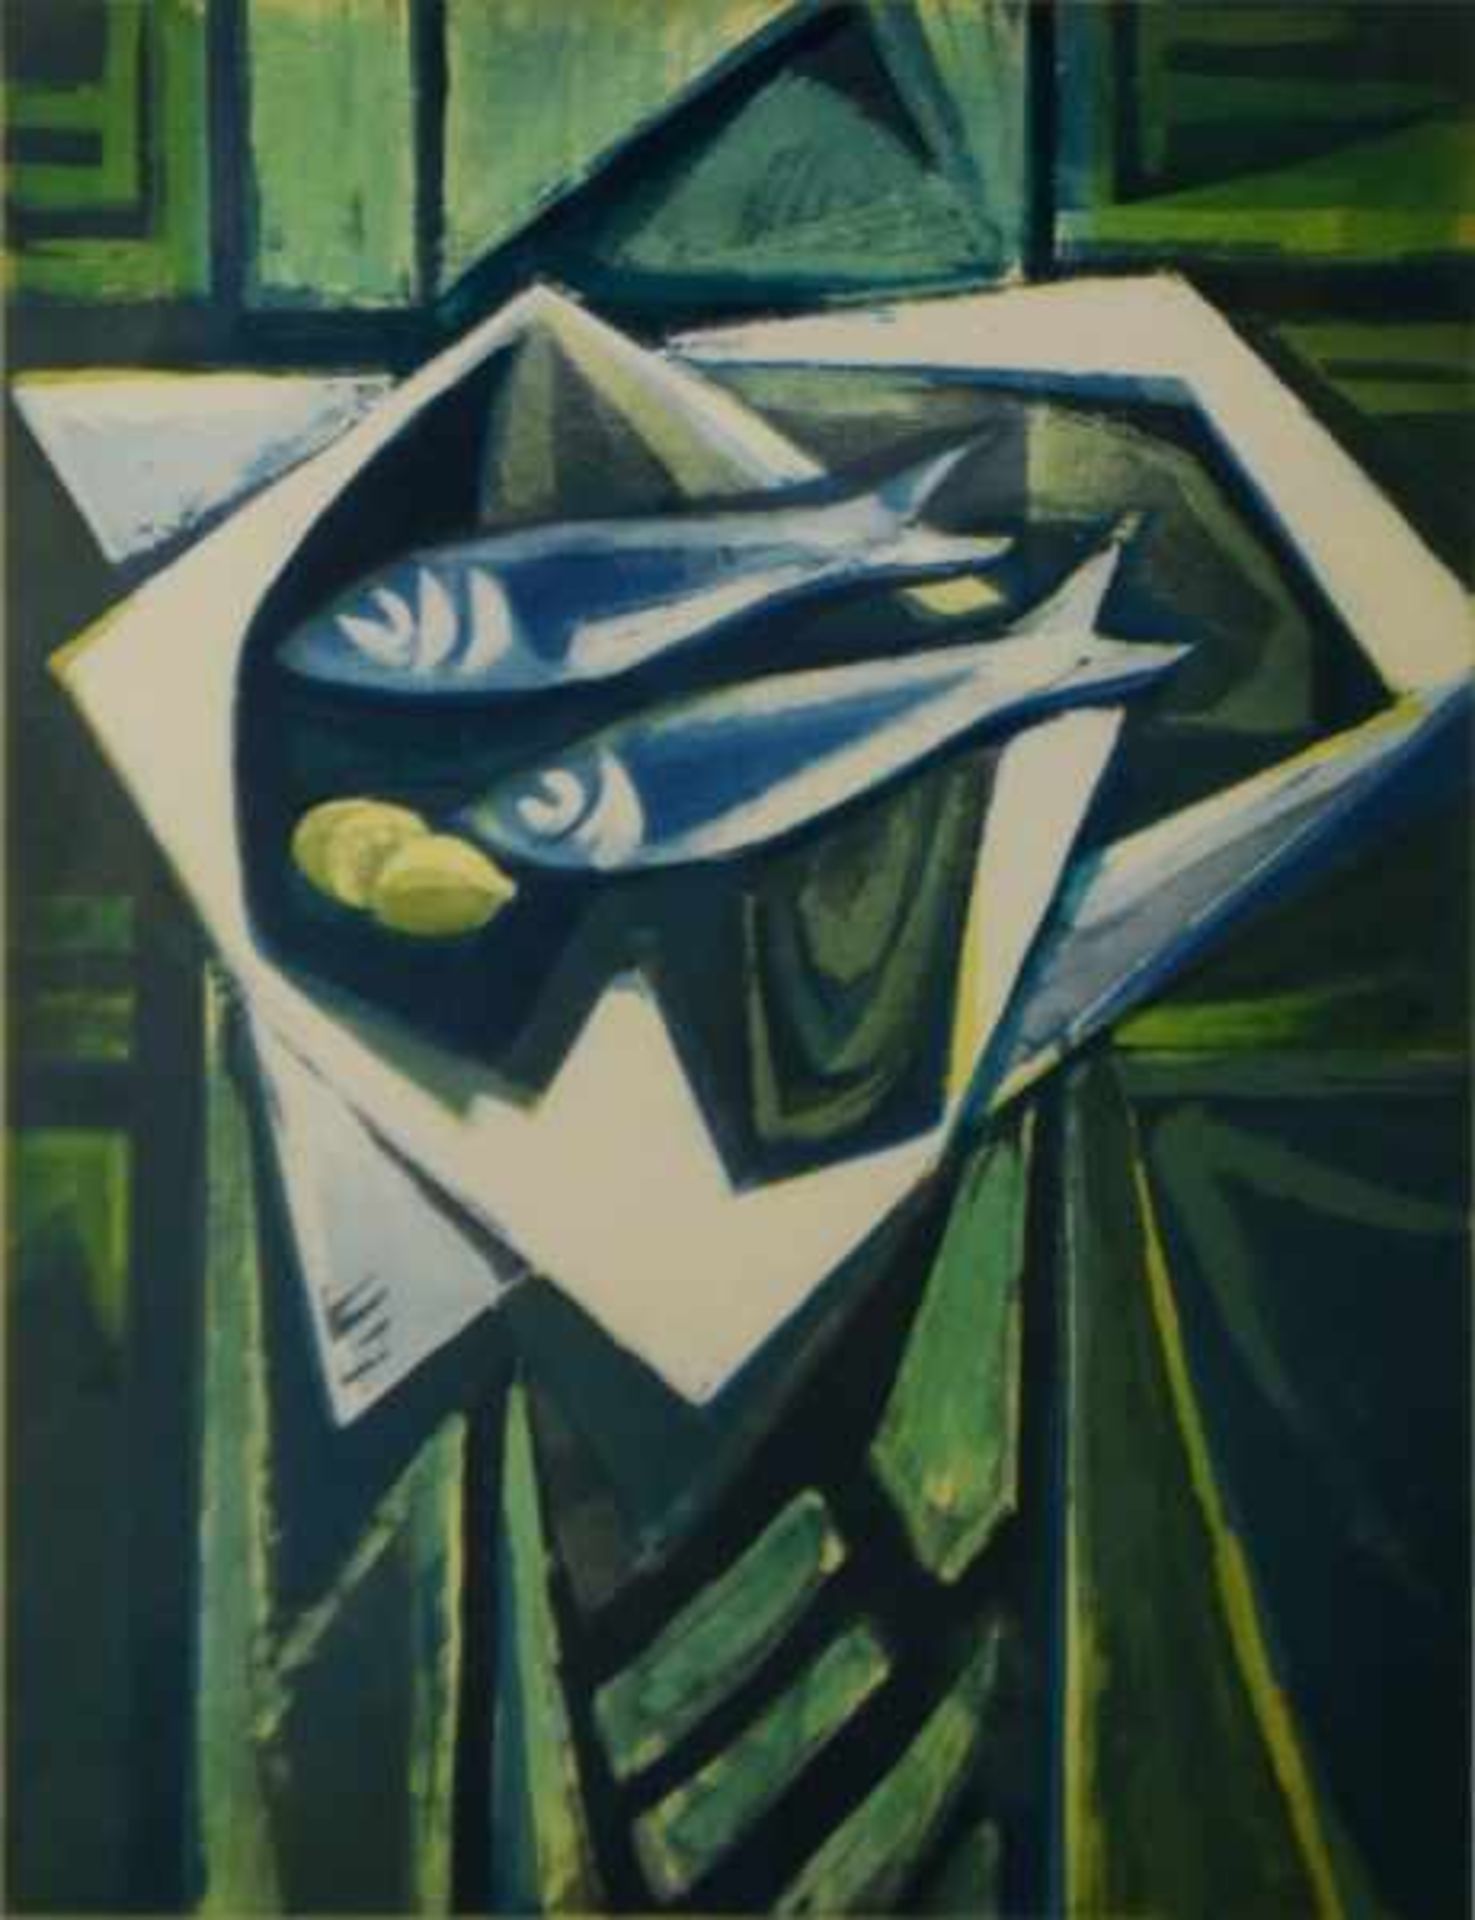 OSSWALD Karl (1925-1972 Singen) "Teller mit Fischen" in Grünblatönen, Farbgraphik, rechts unten - Image 2 of 5